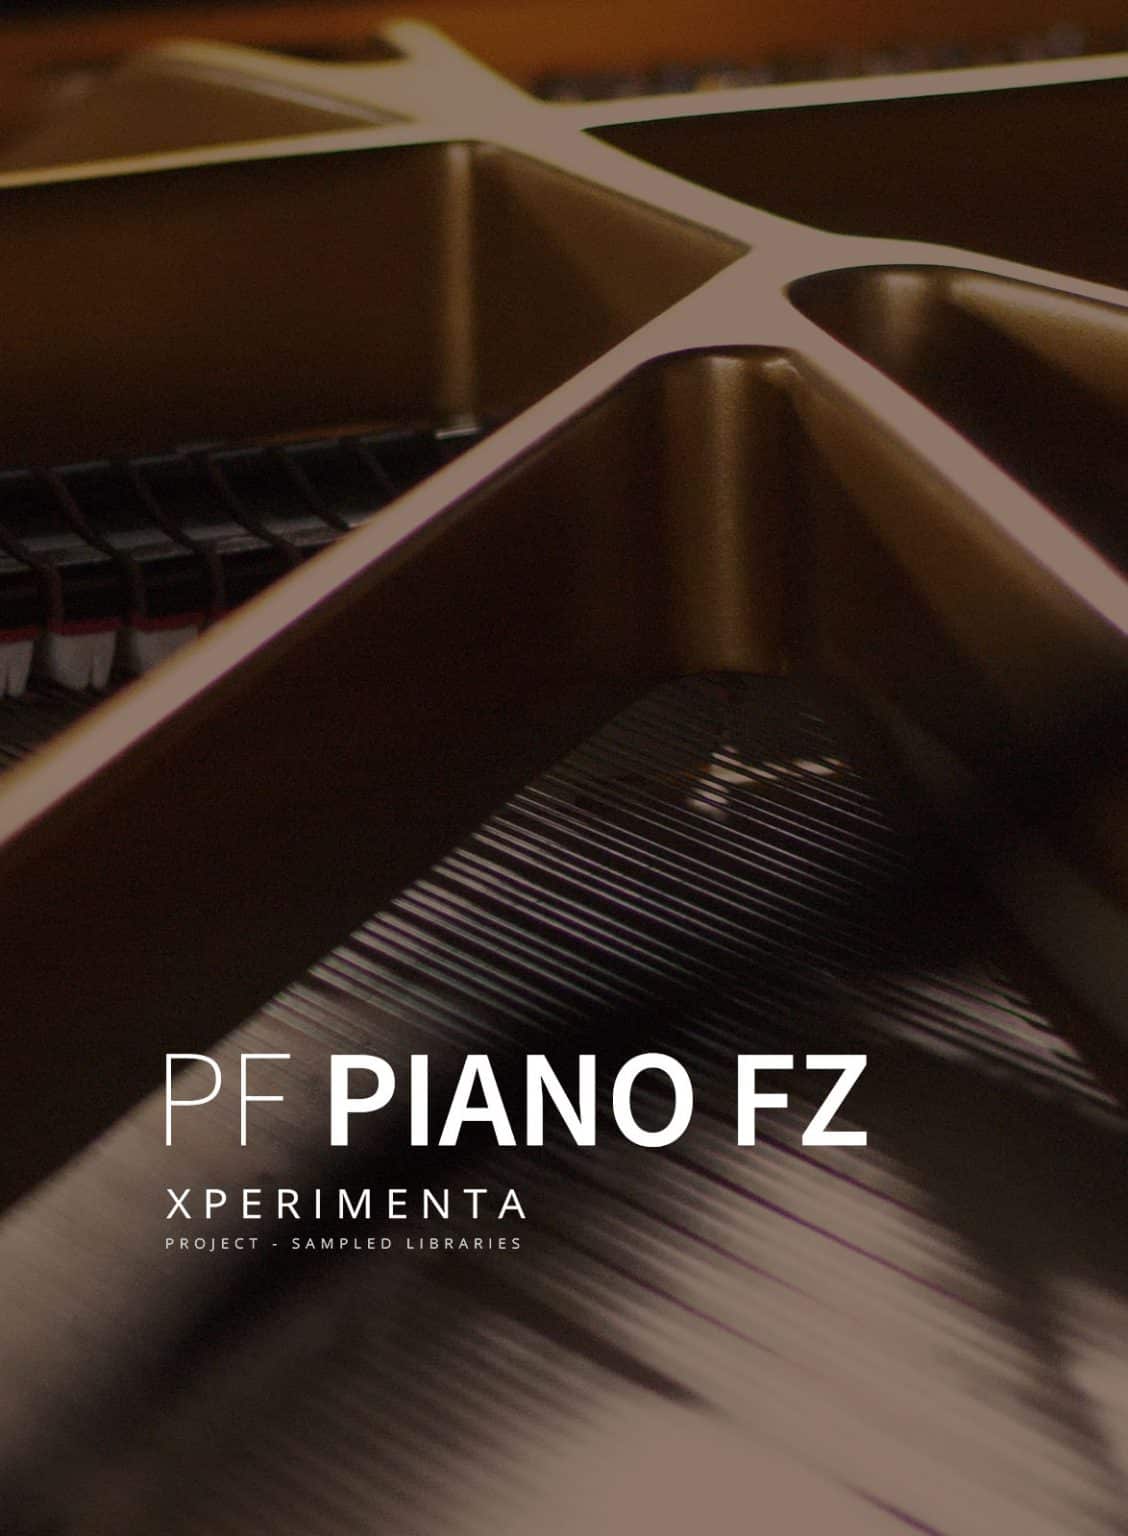 54% off “PF Piano FZ” by Xperimenta Audio